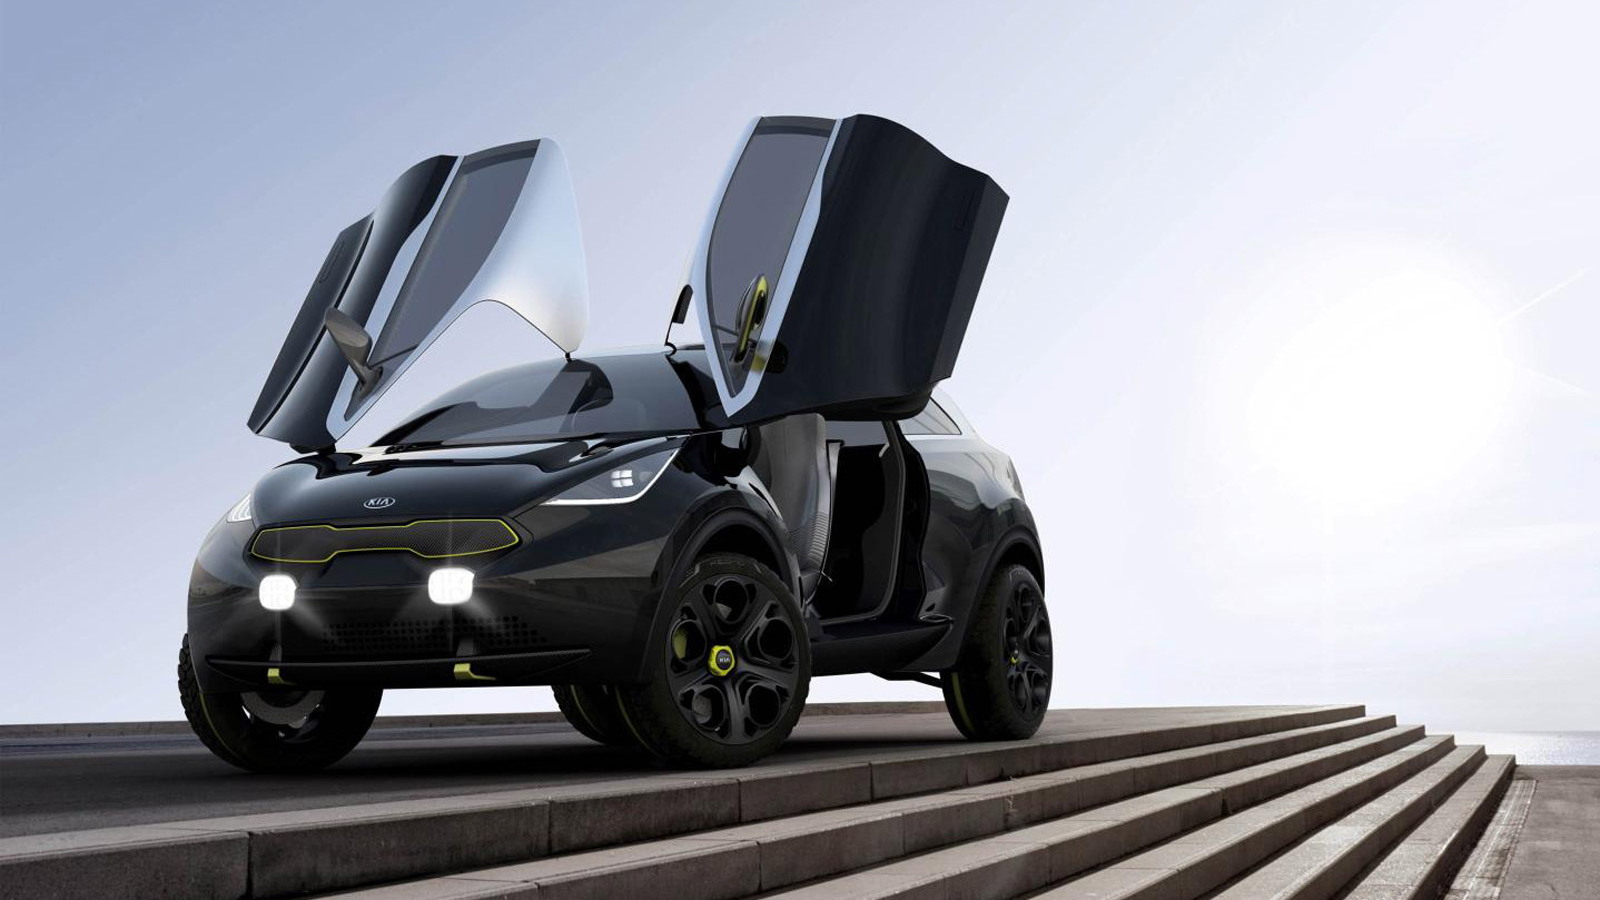 Anoniem Inzet voordeel Kia Reveals Niro Crossover Concept Ahead Of 2013 Frankfurt Auto Show